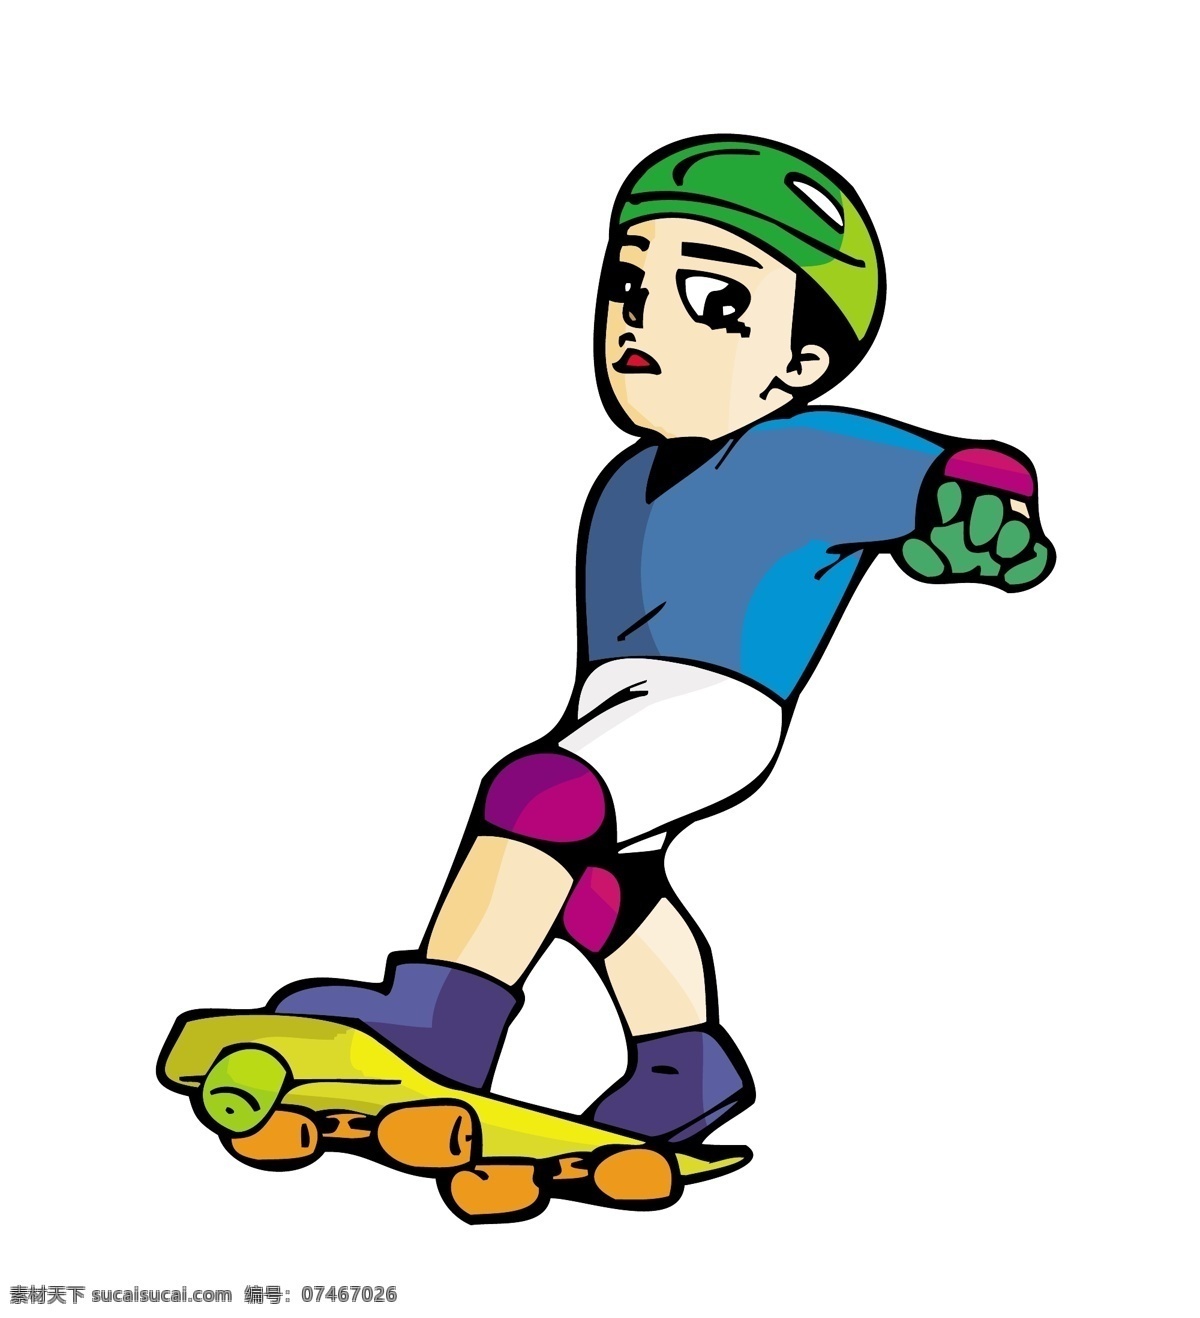 矢量 滑板 男儿 可爱 卡通 运动员 模板下载 卡通运动员 人物 大全 日常生活 矢量人物